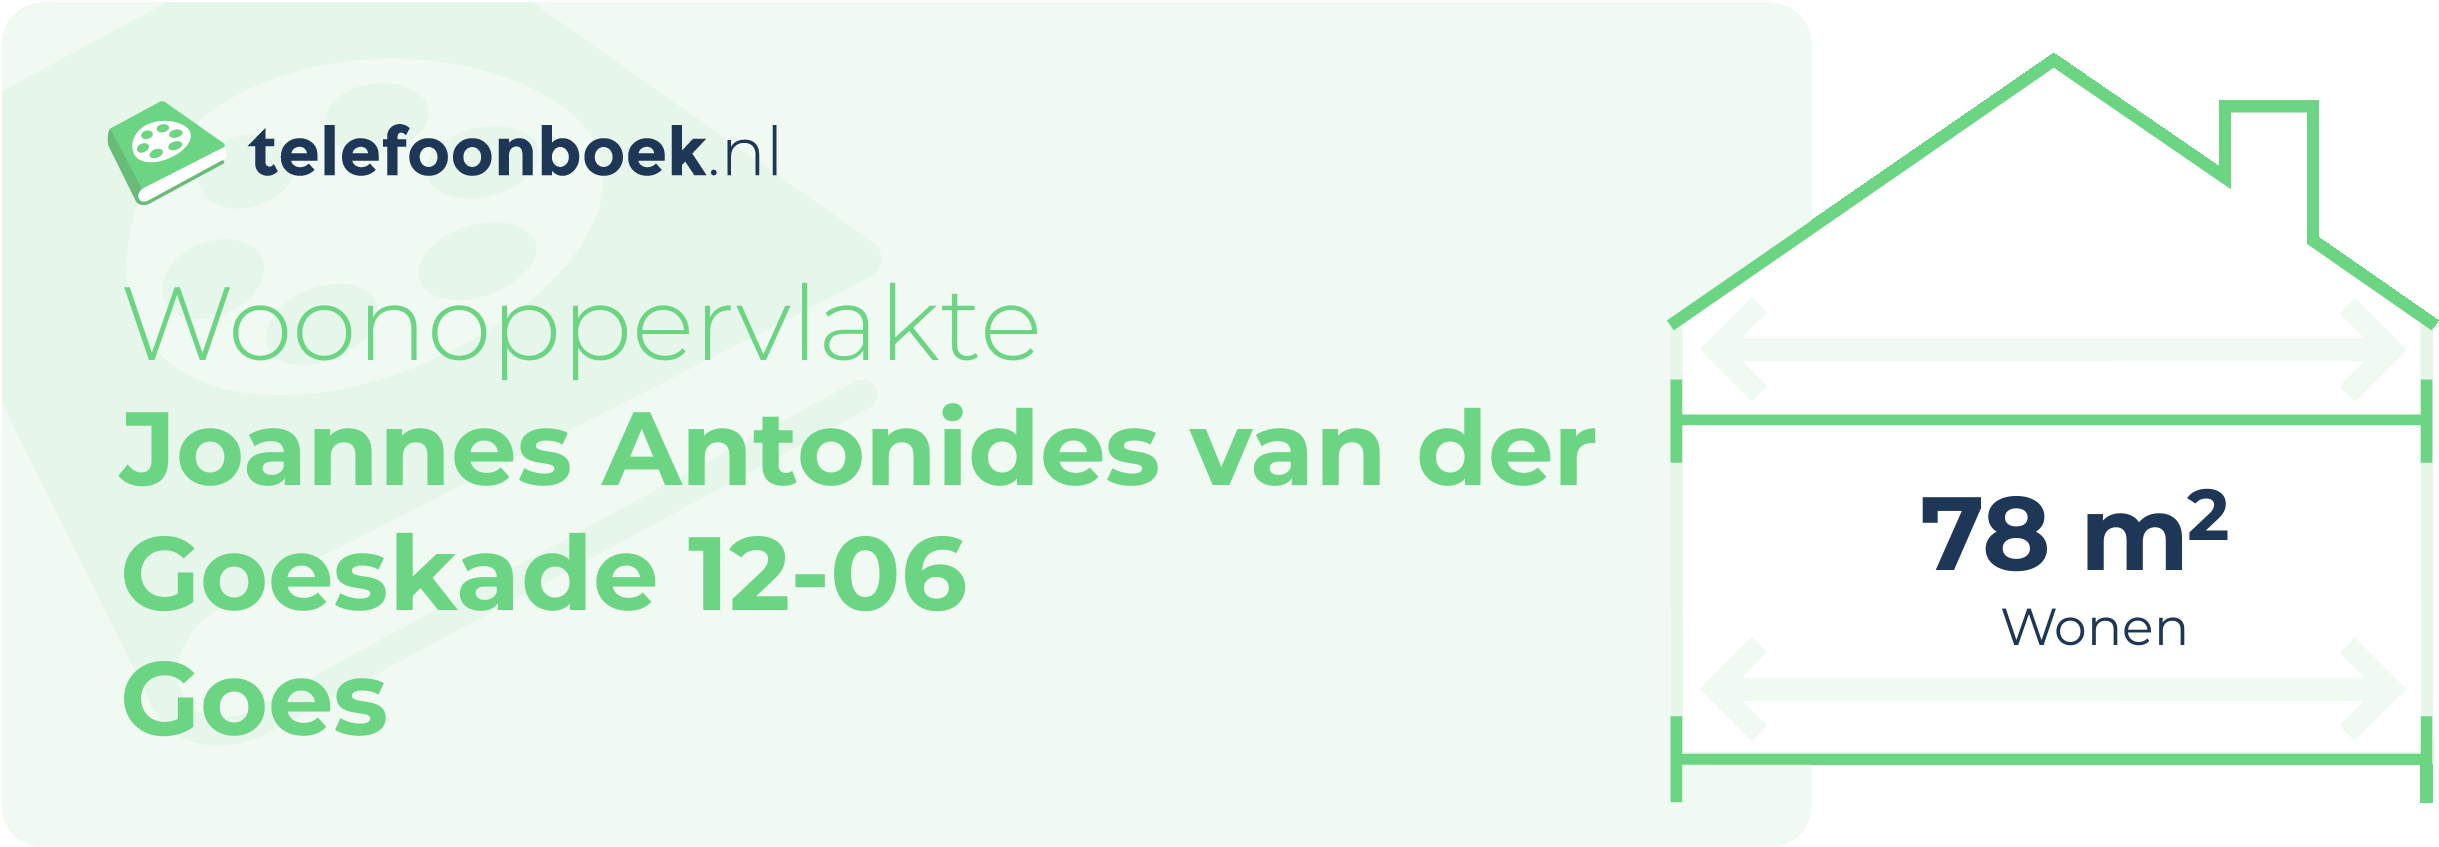 Woonoppervlakte Joannes Antonides Van Der Goeskade 12-06 Goes